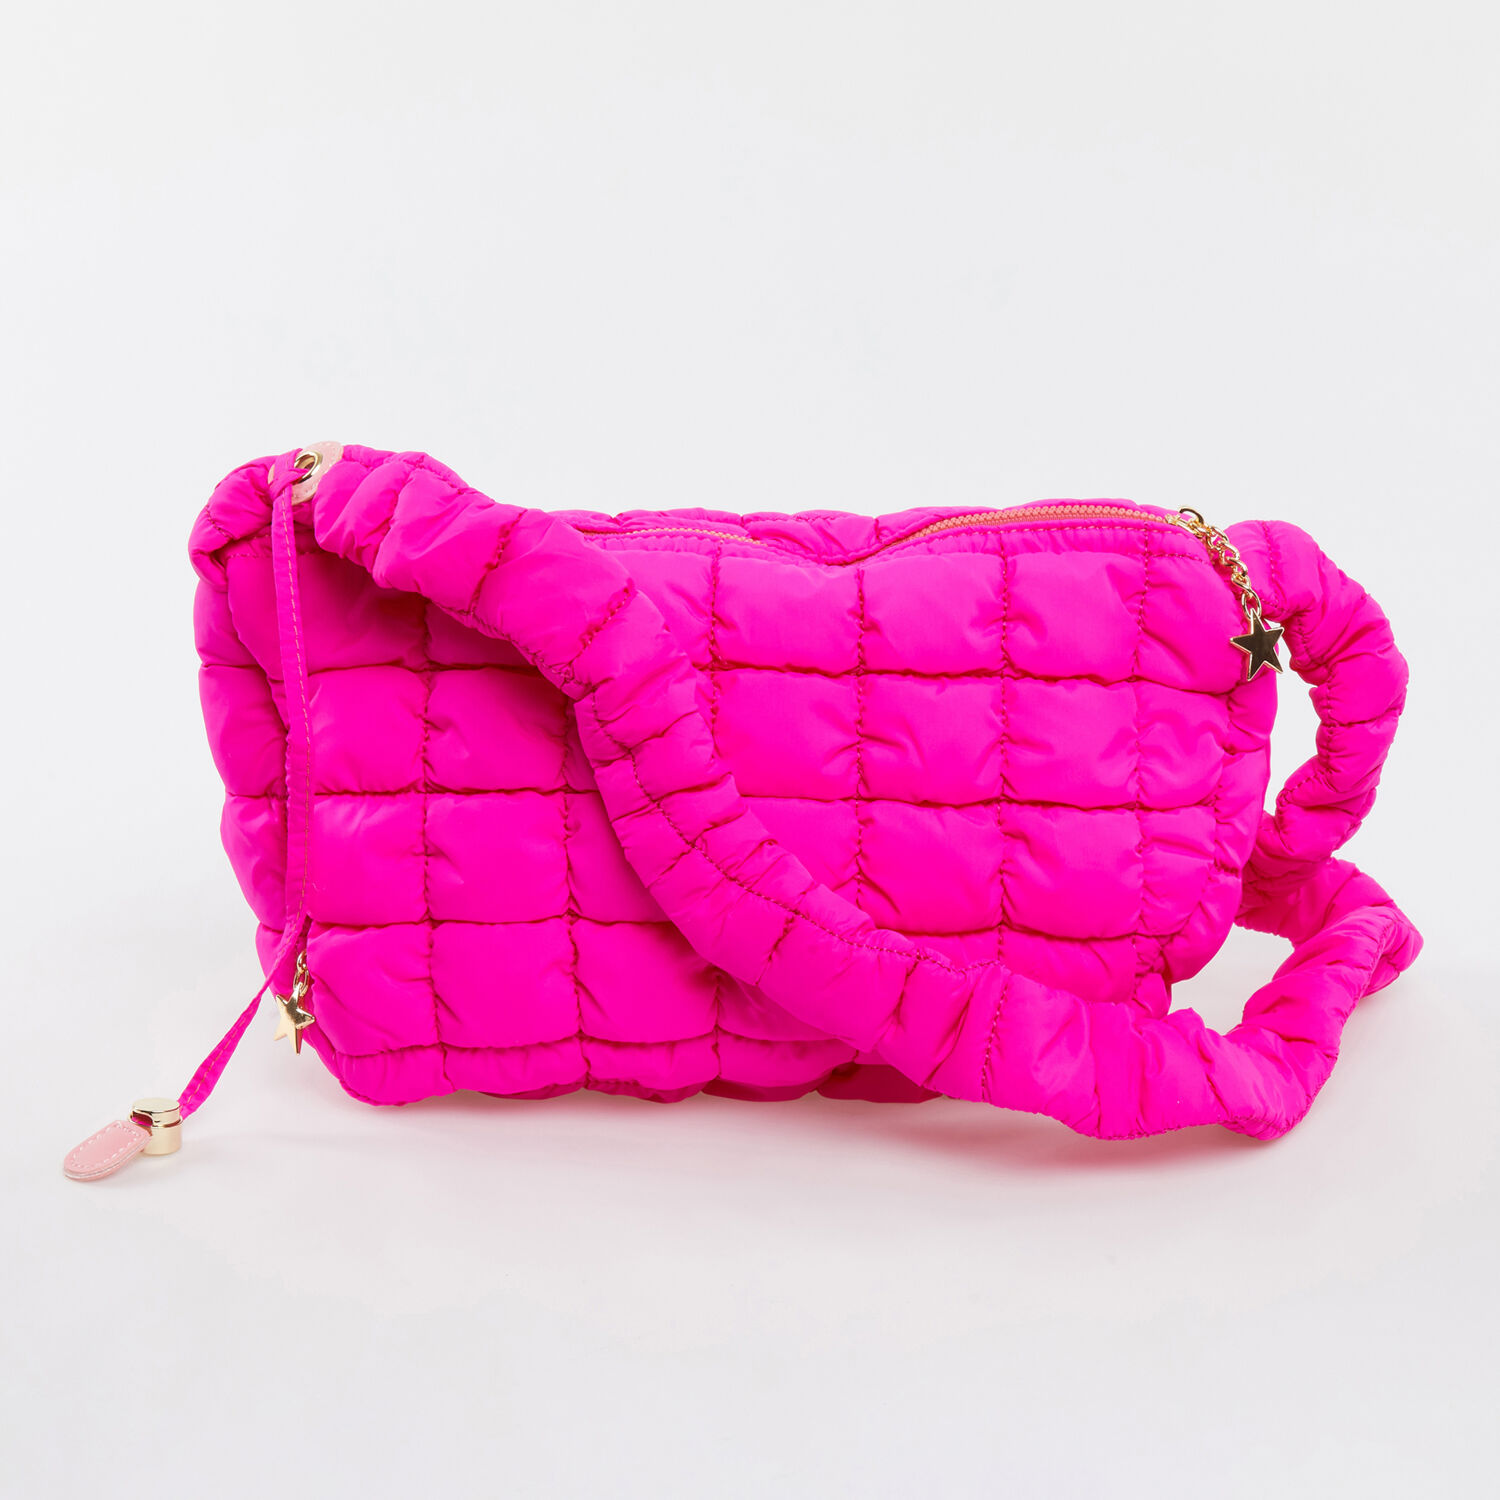 Pink Quilted Shoulder Bag - TK Maxx UK